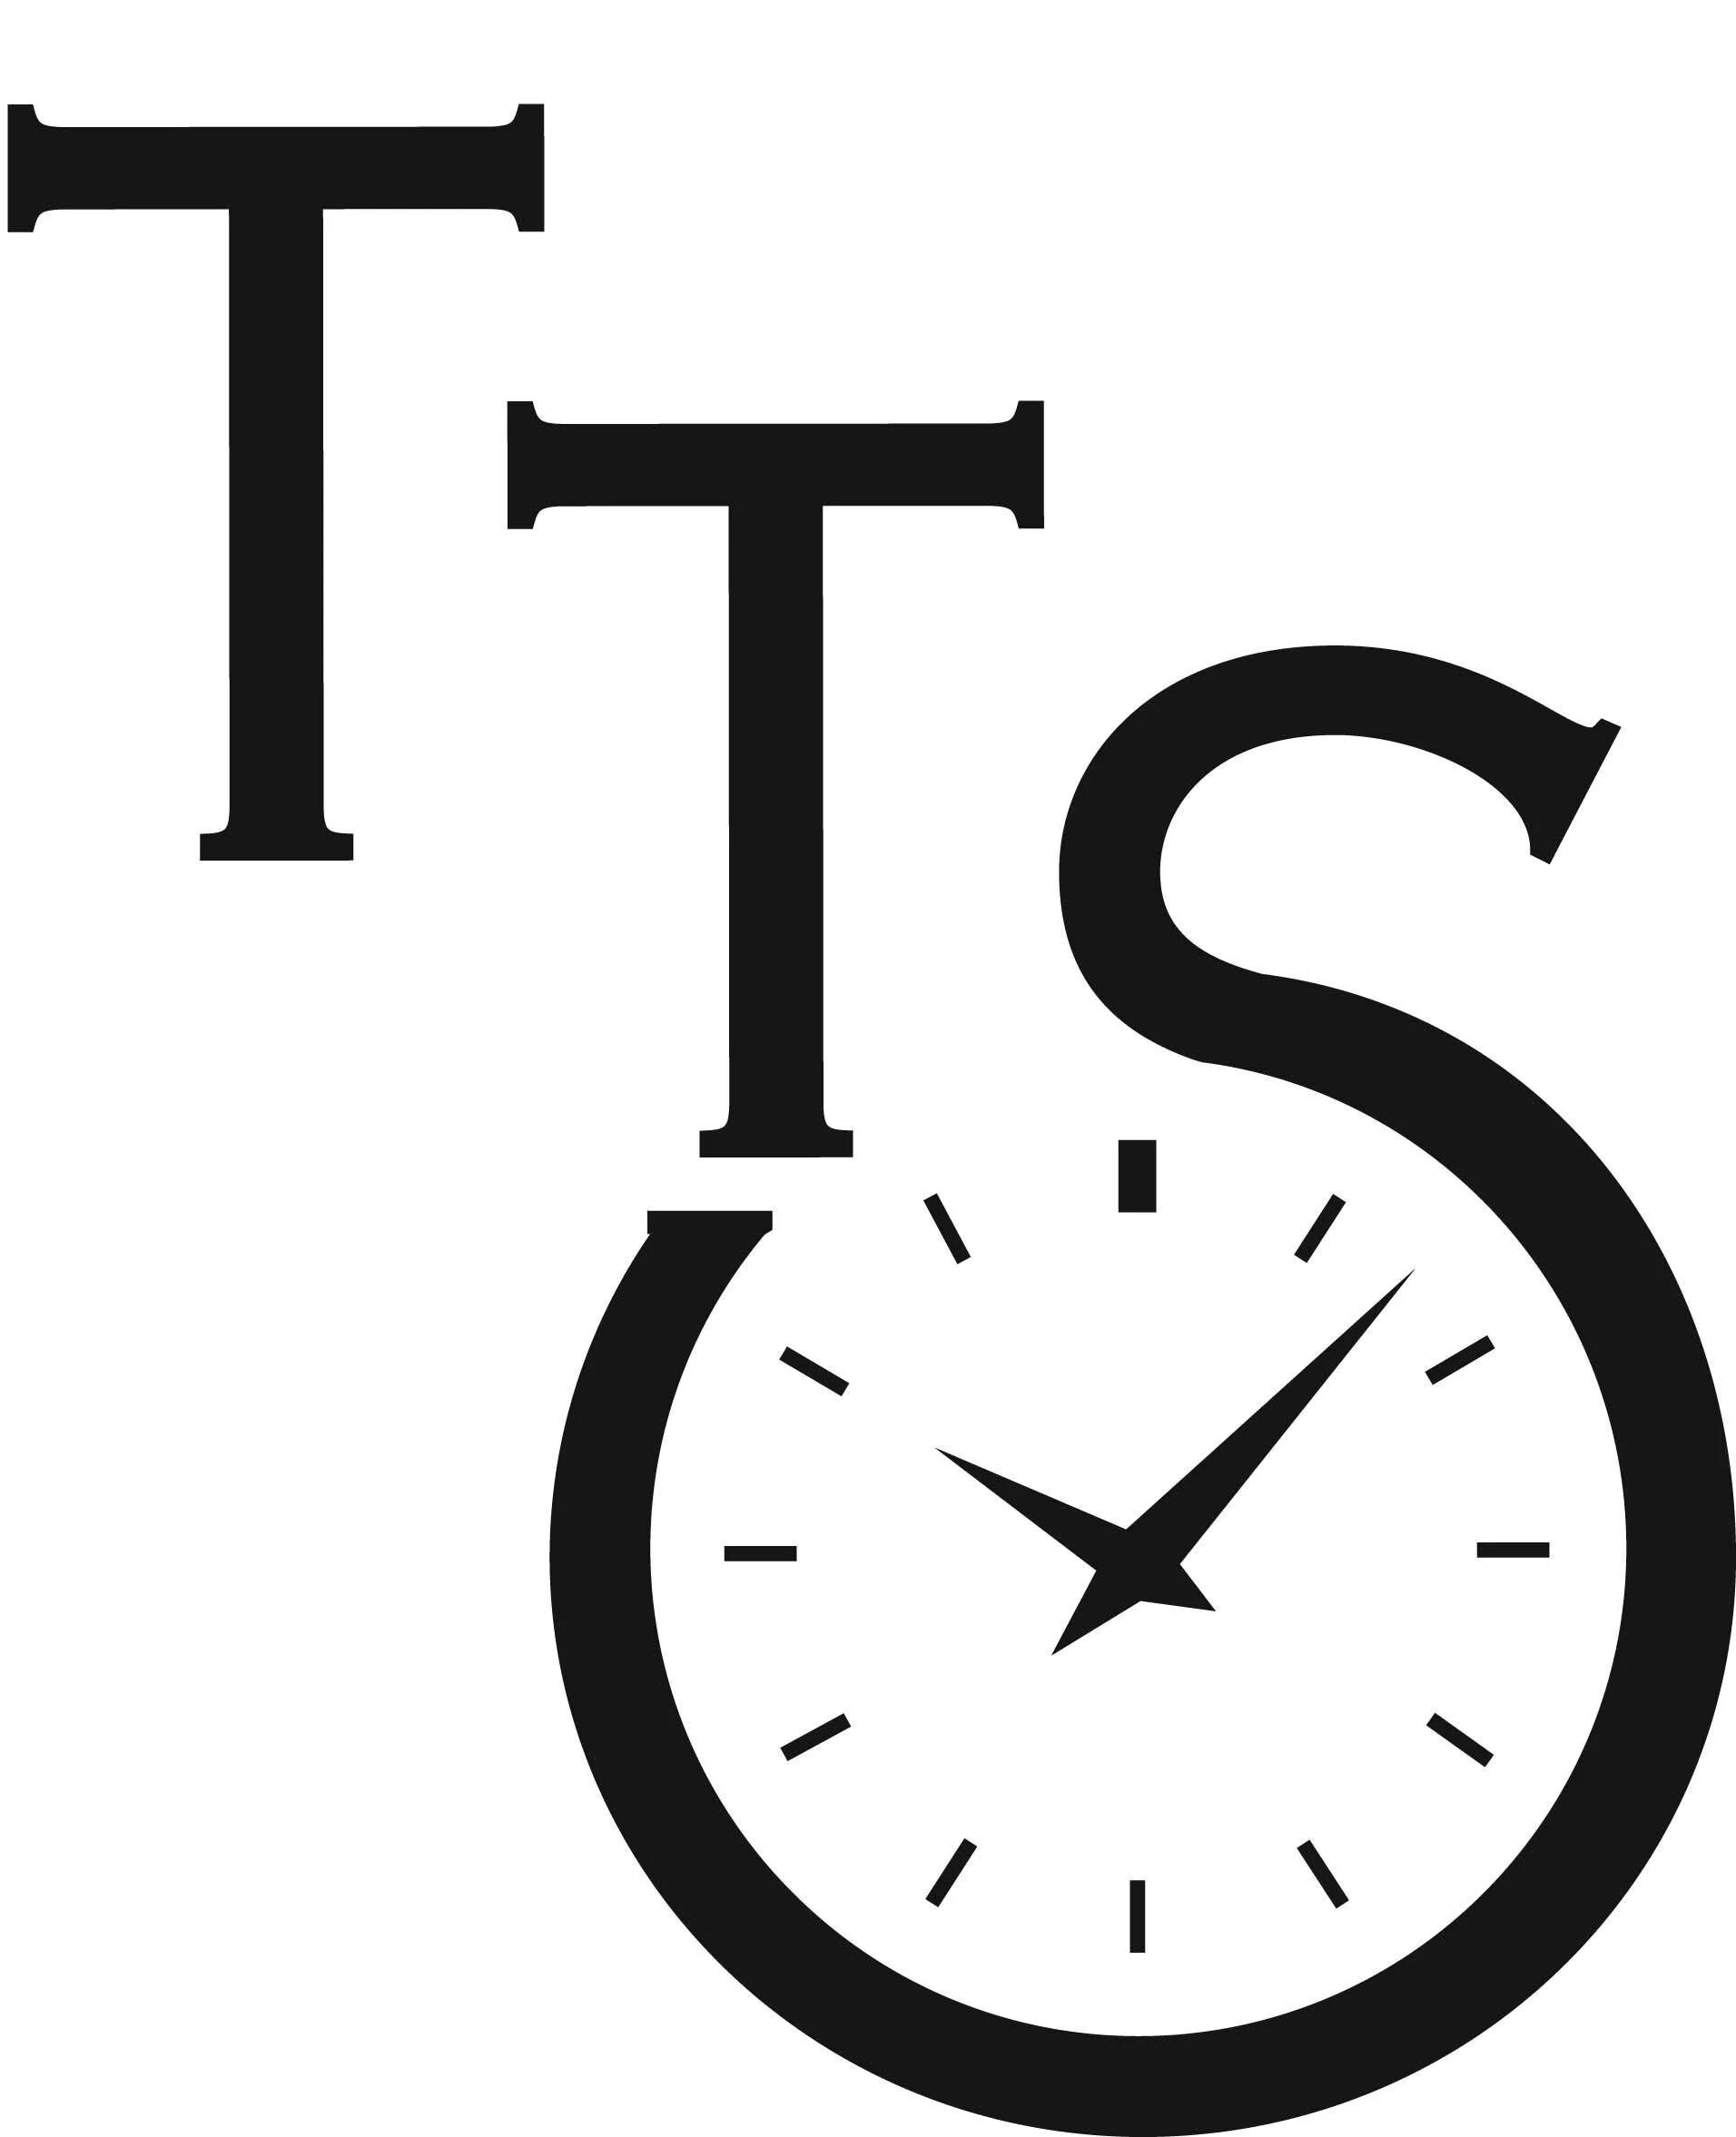 Час лого. Часы логотип. Логотип магазина часов. Часы фирменный знак. Логотип с часами.